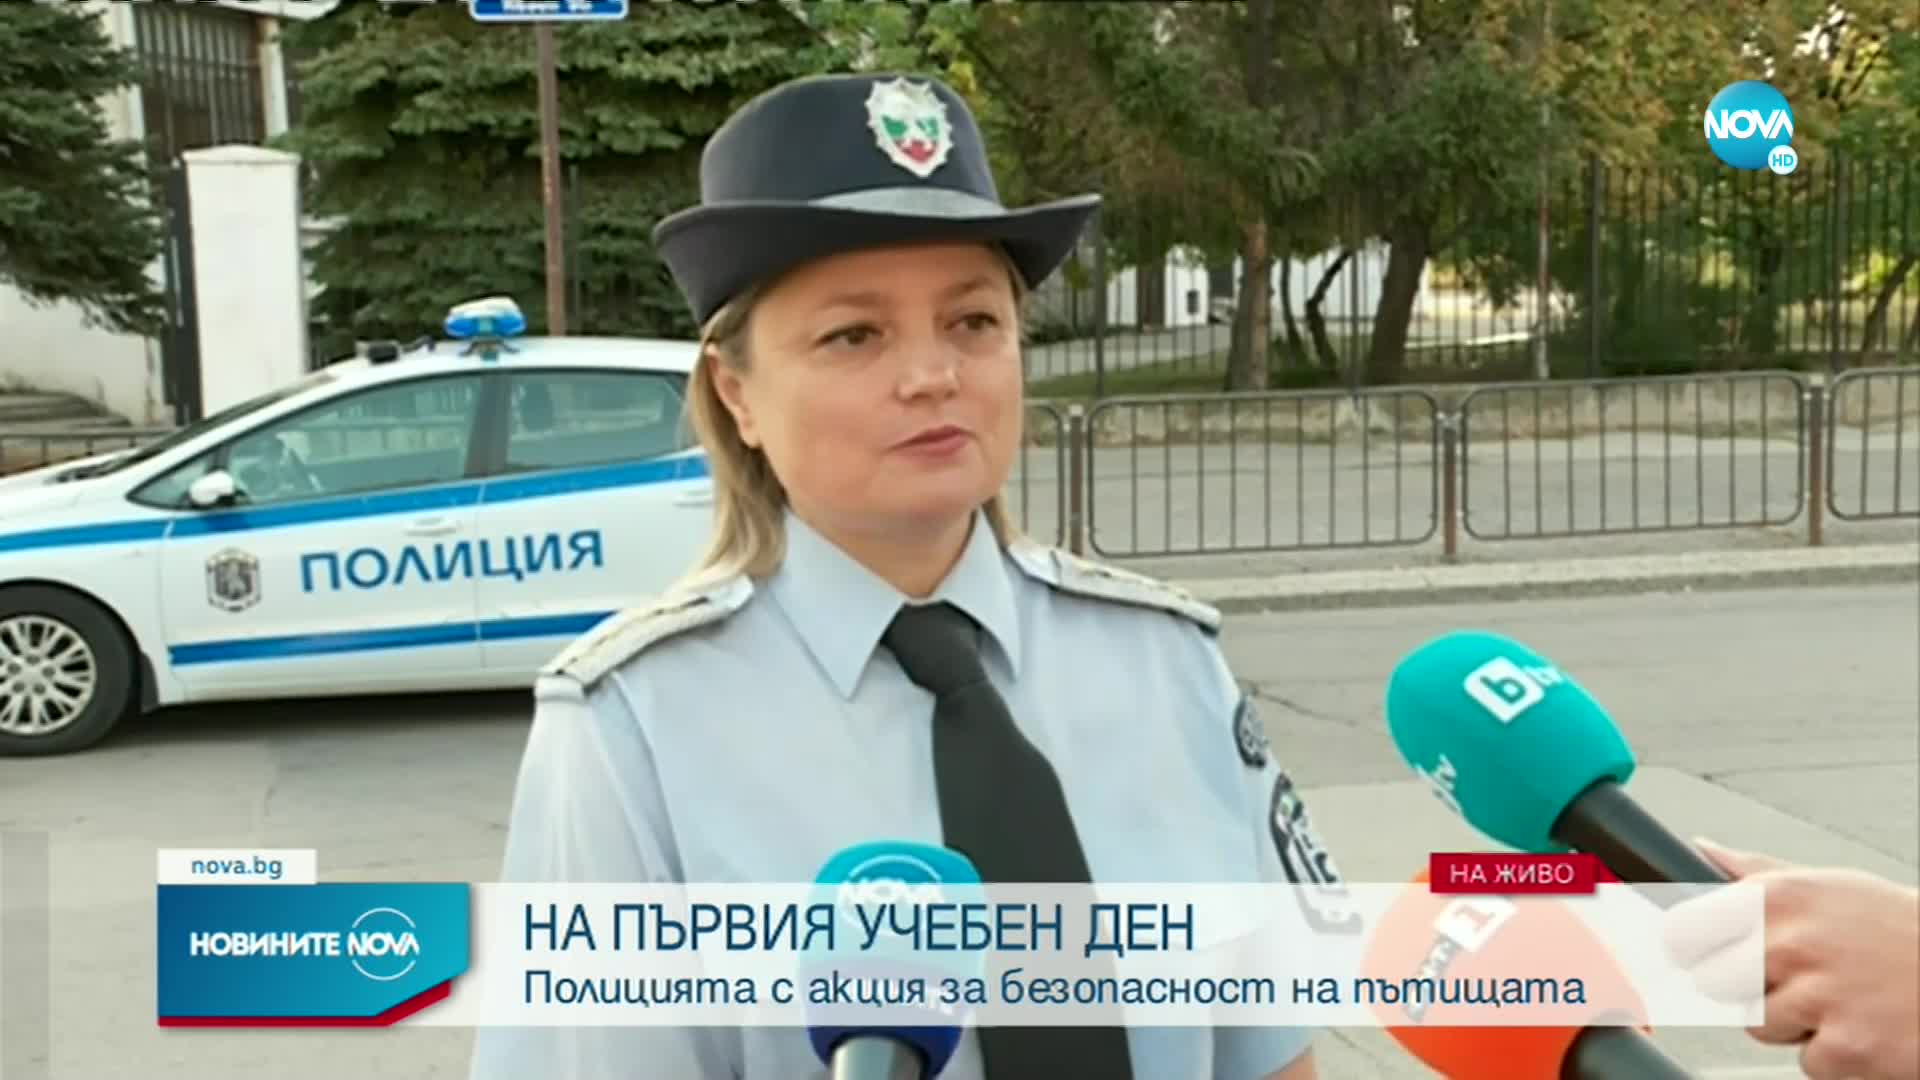 Пътна полиция ще следи за безопасността на движението около училищата и детските градини